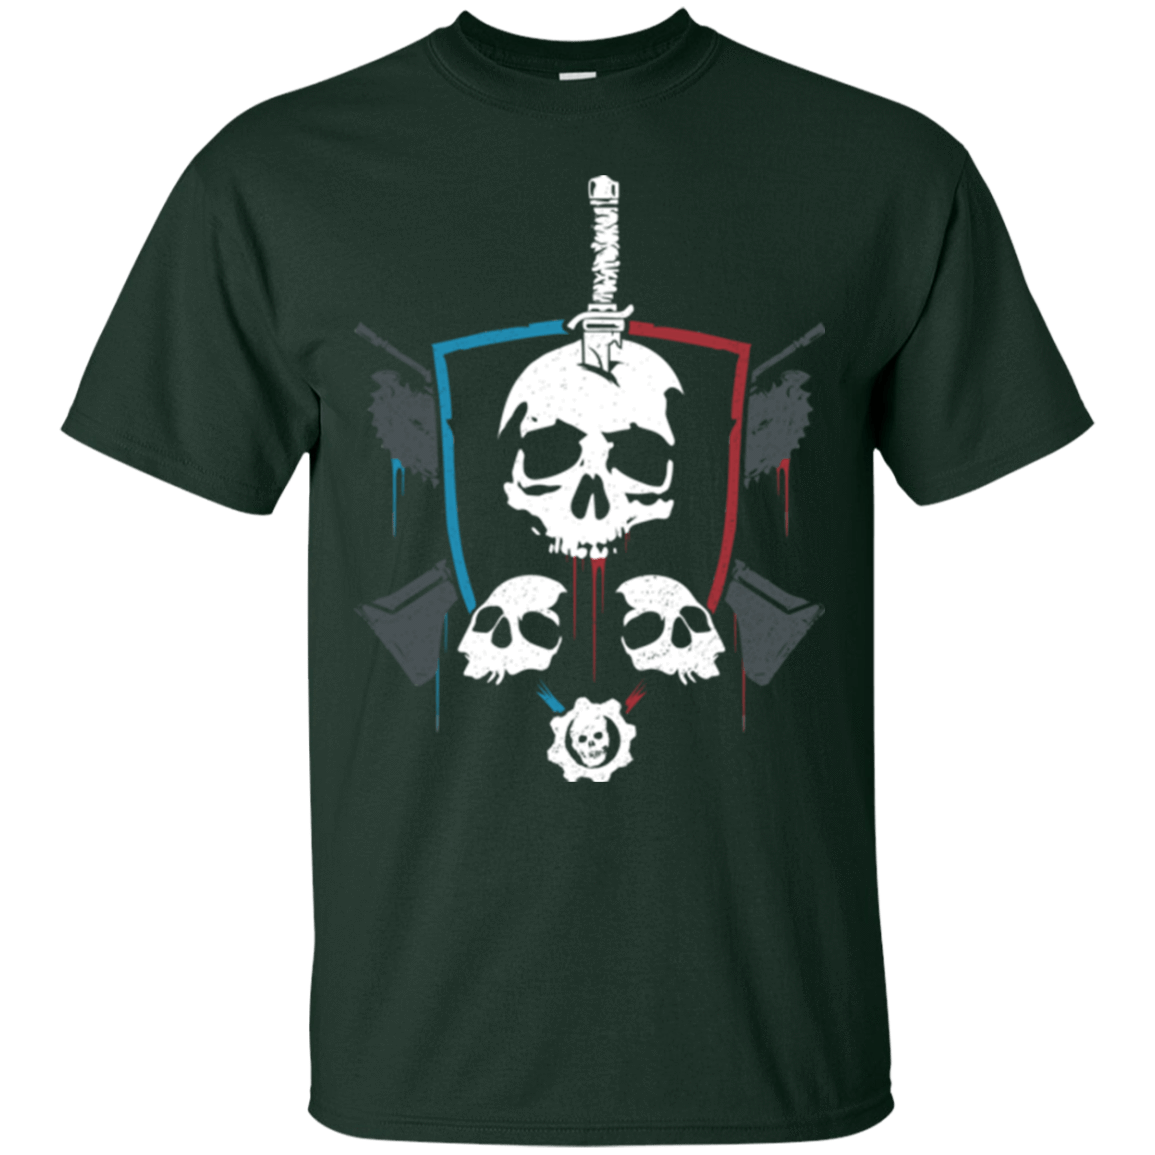 T-Shirts Forest Green / Small Gears of War 4 Crest T-Shirt